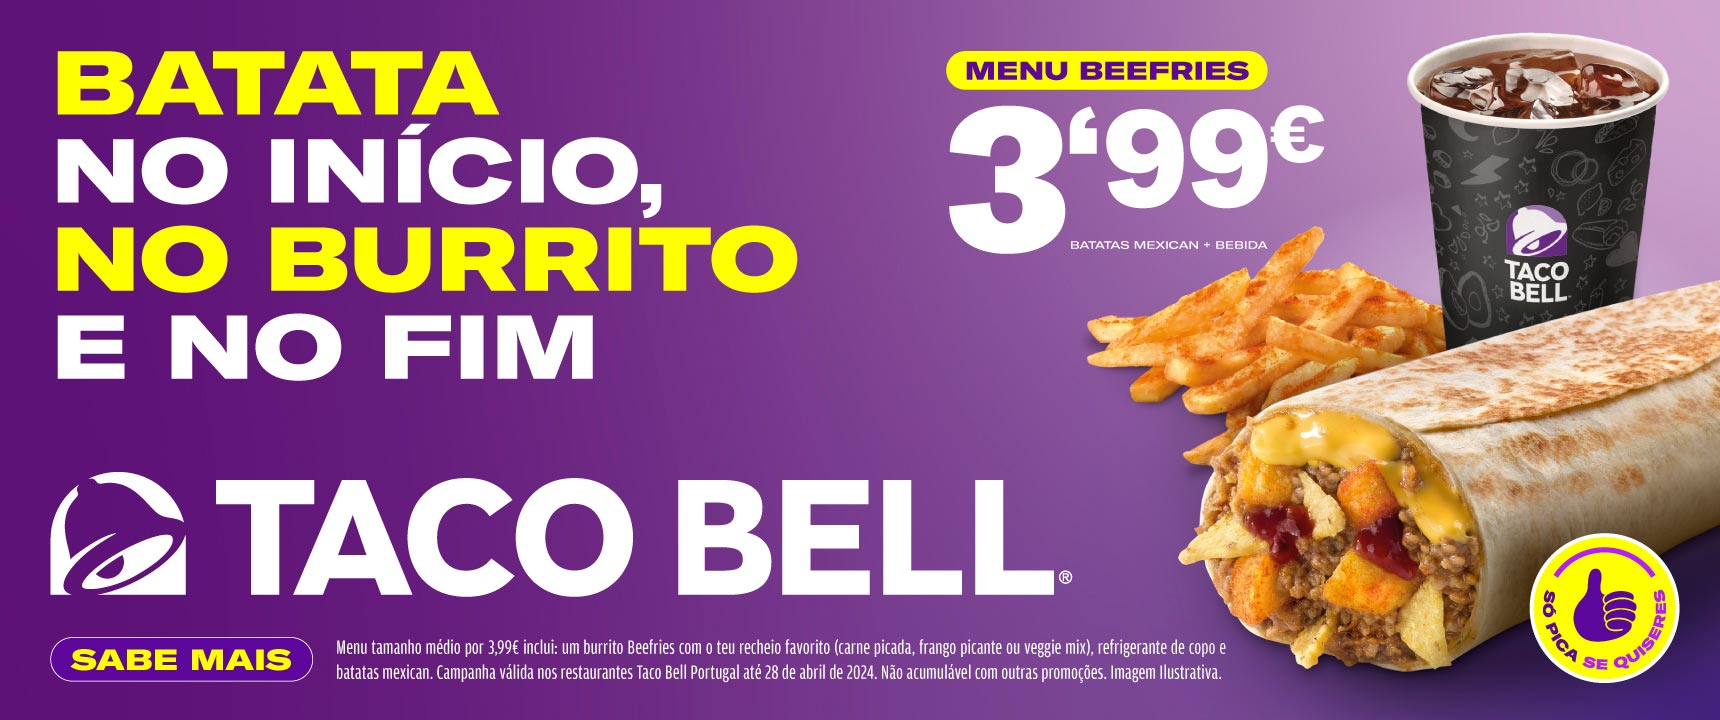 Beefries Taco Bell Promoção